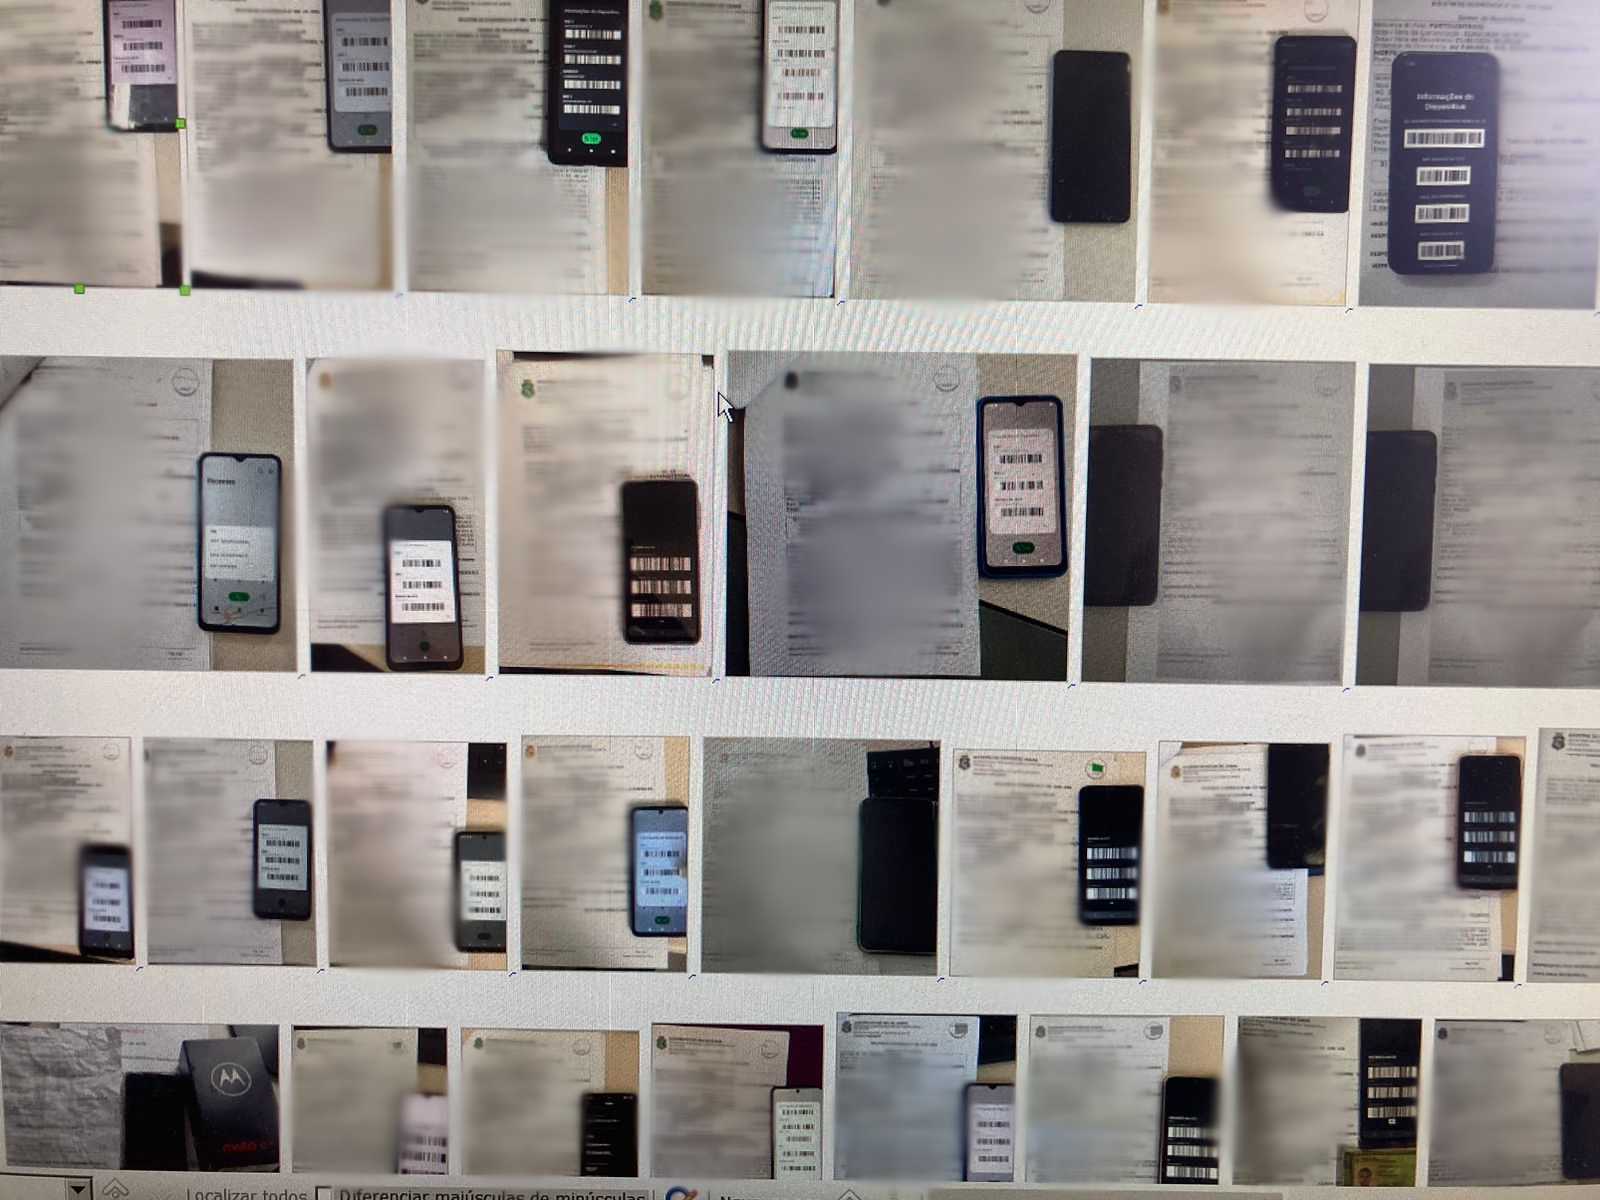 Polícia Civil recupera 53 celulares com restrição em Juazeiro do Norte em abril deste ano